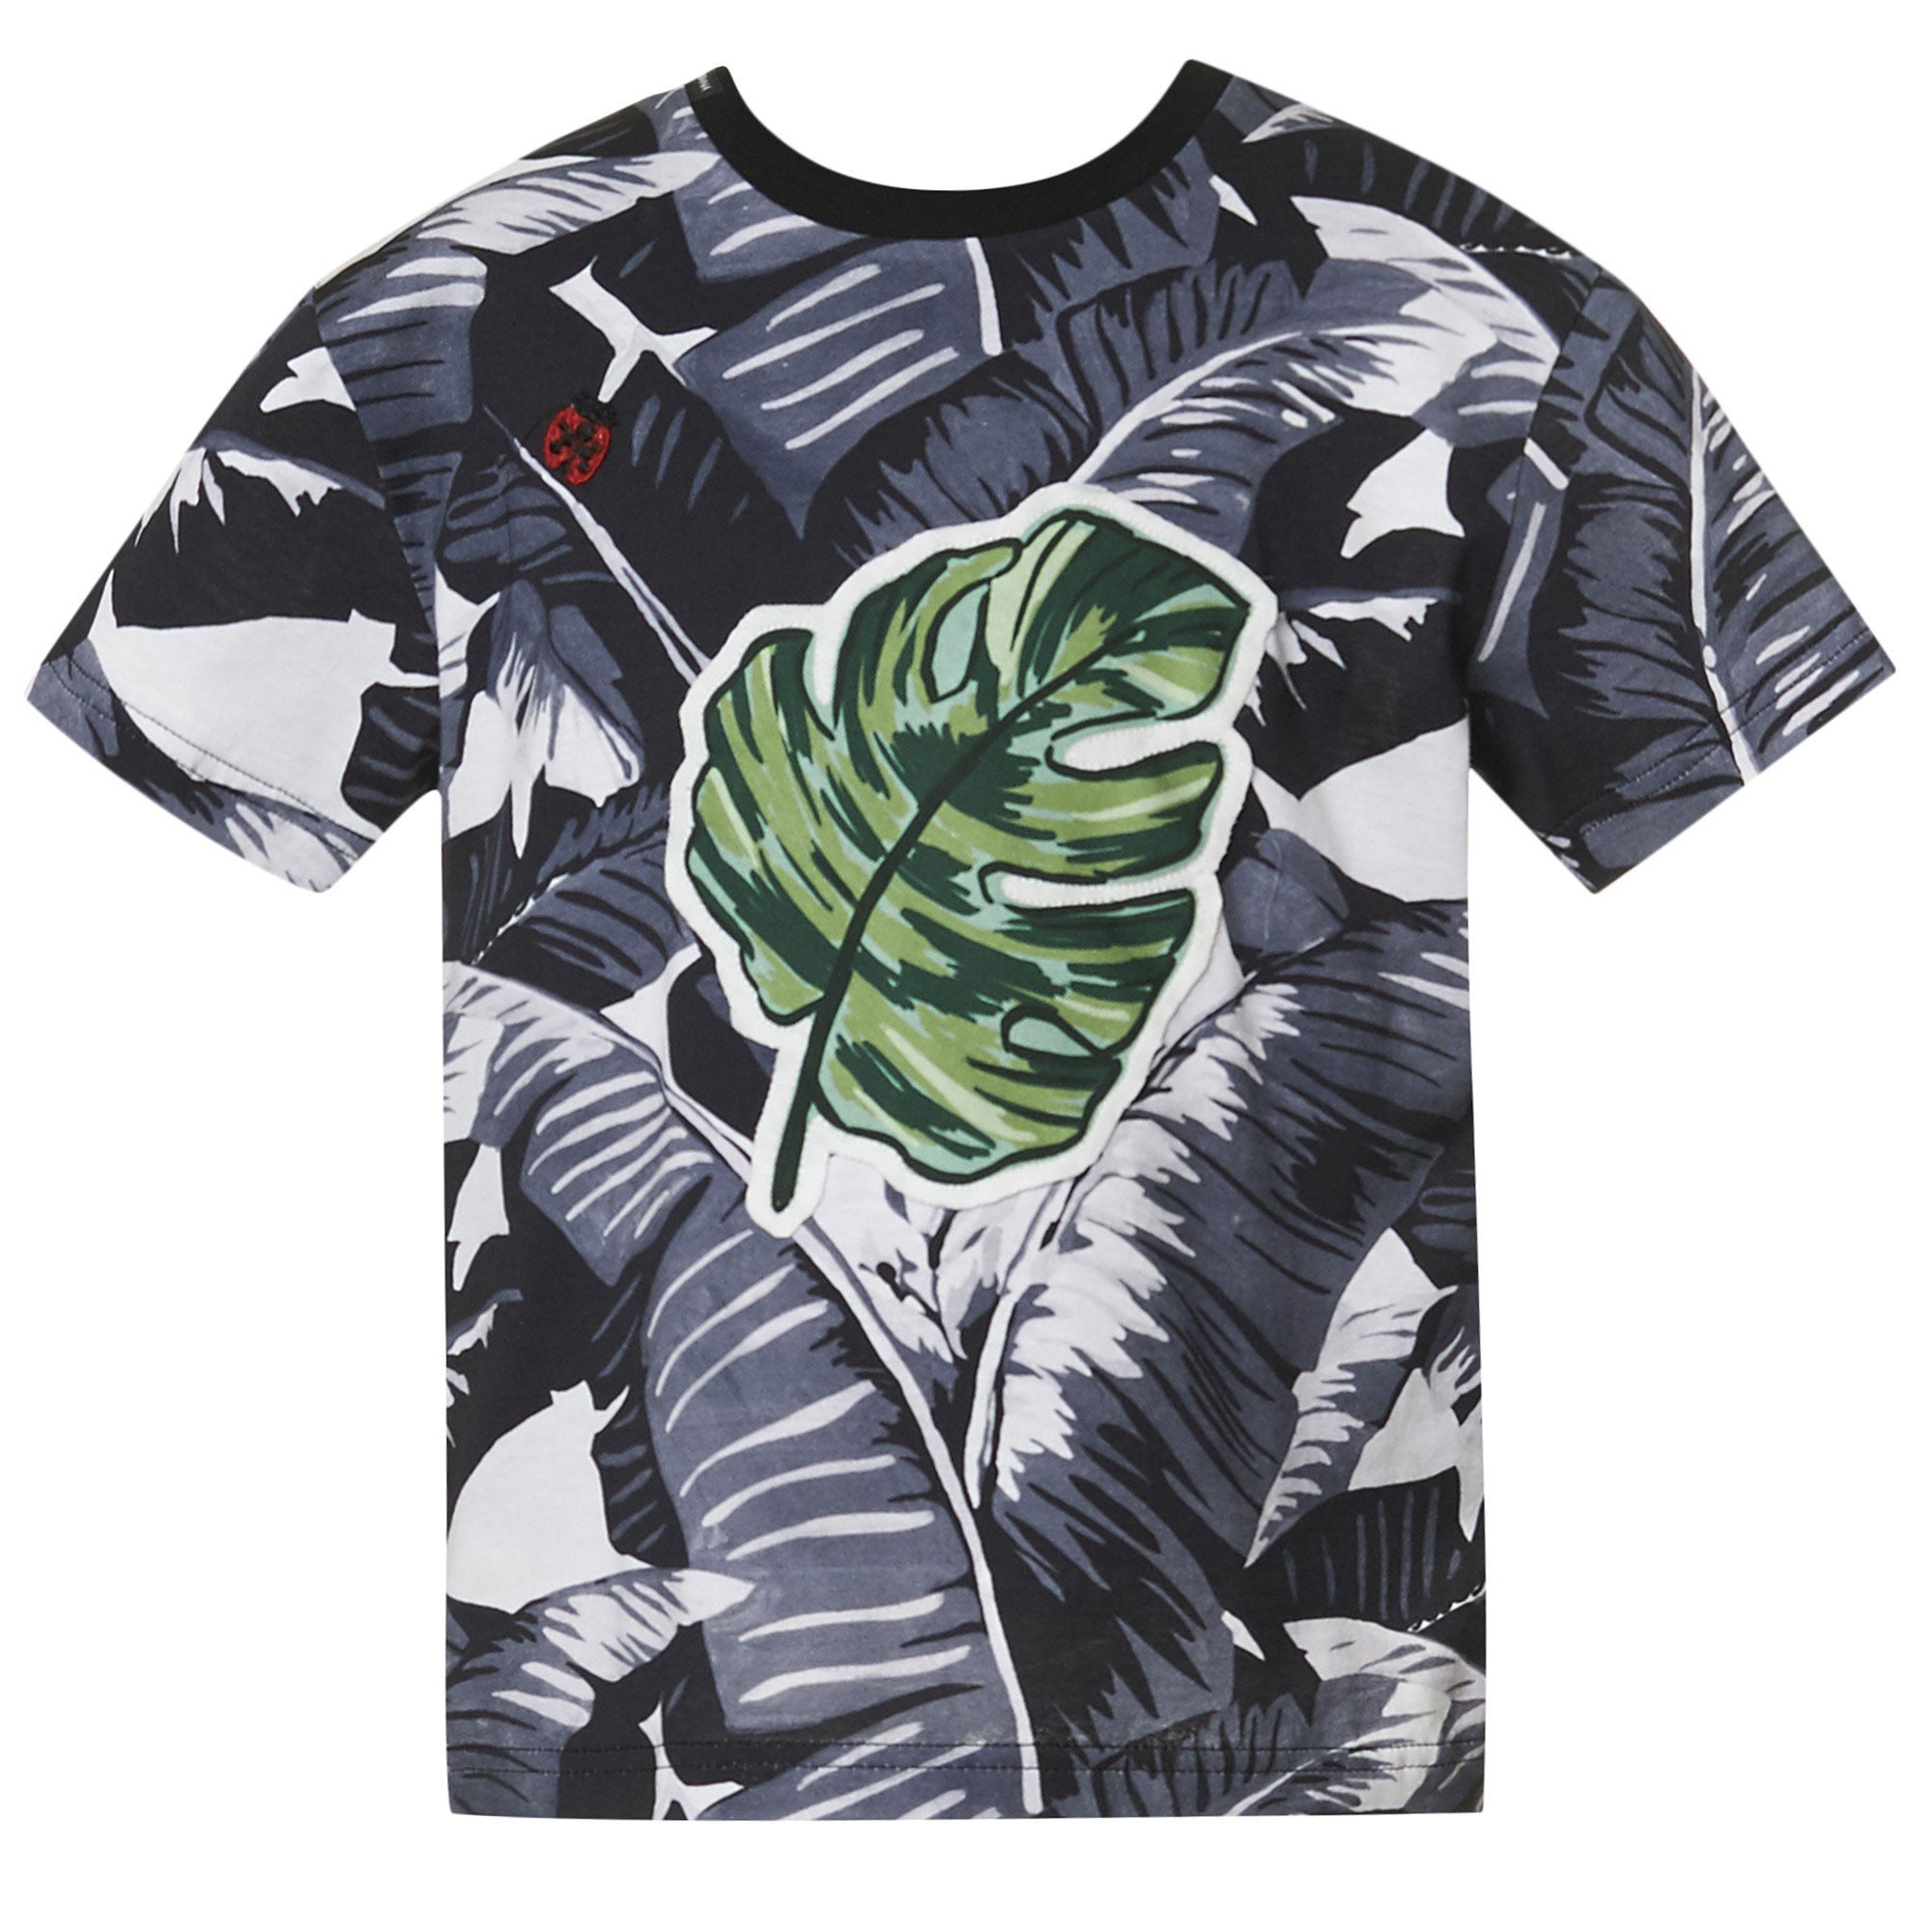 Boys Black Cotton T-Shirt With Leaf Print Trims - CÉMAROSE | Children's Fashion Store - 1